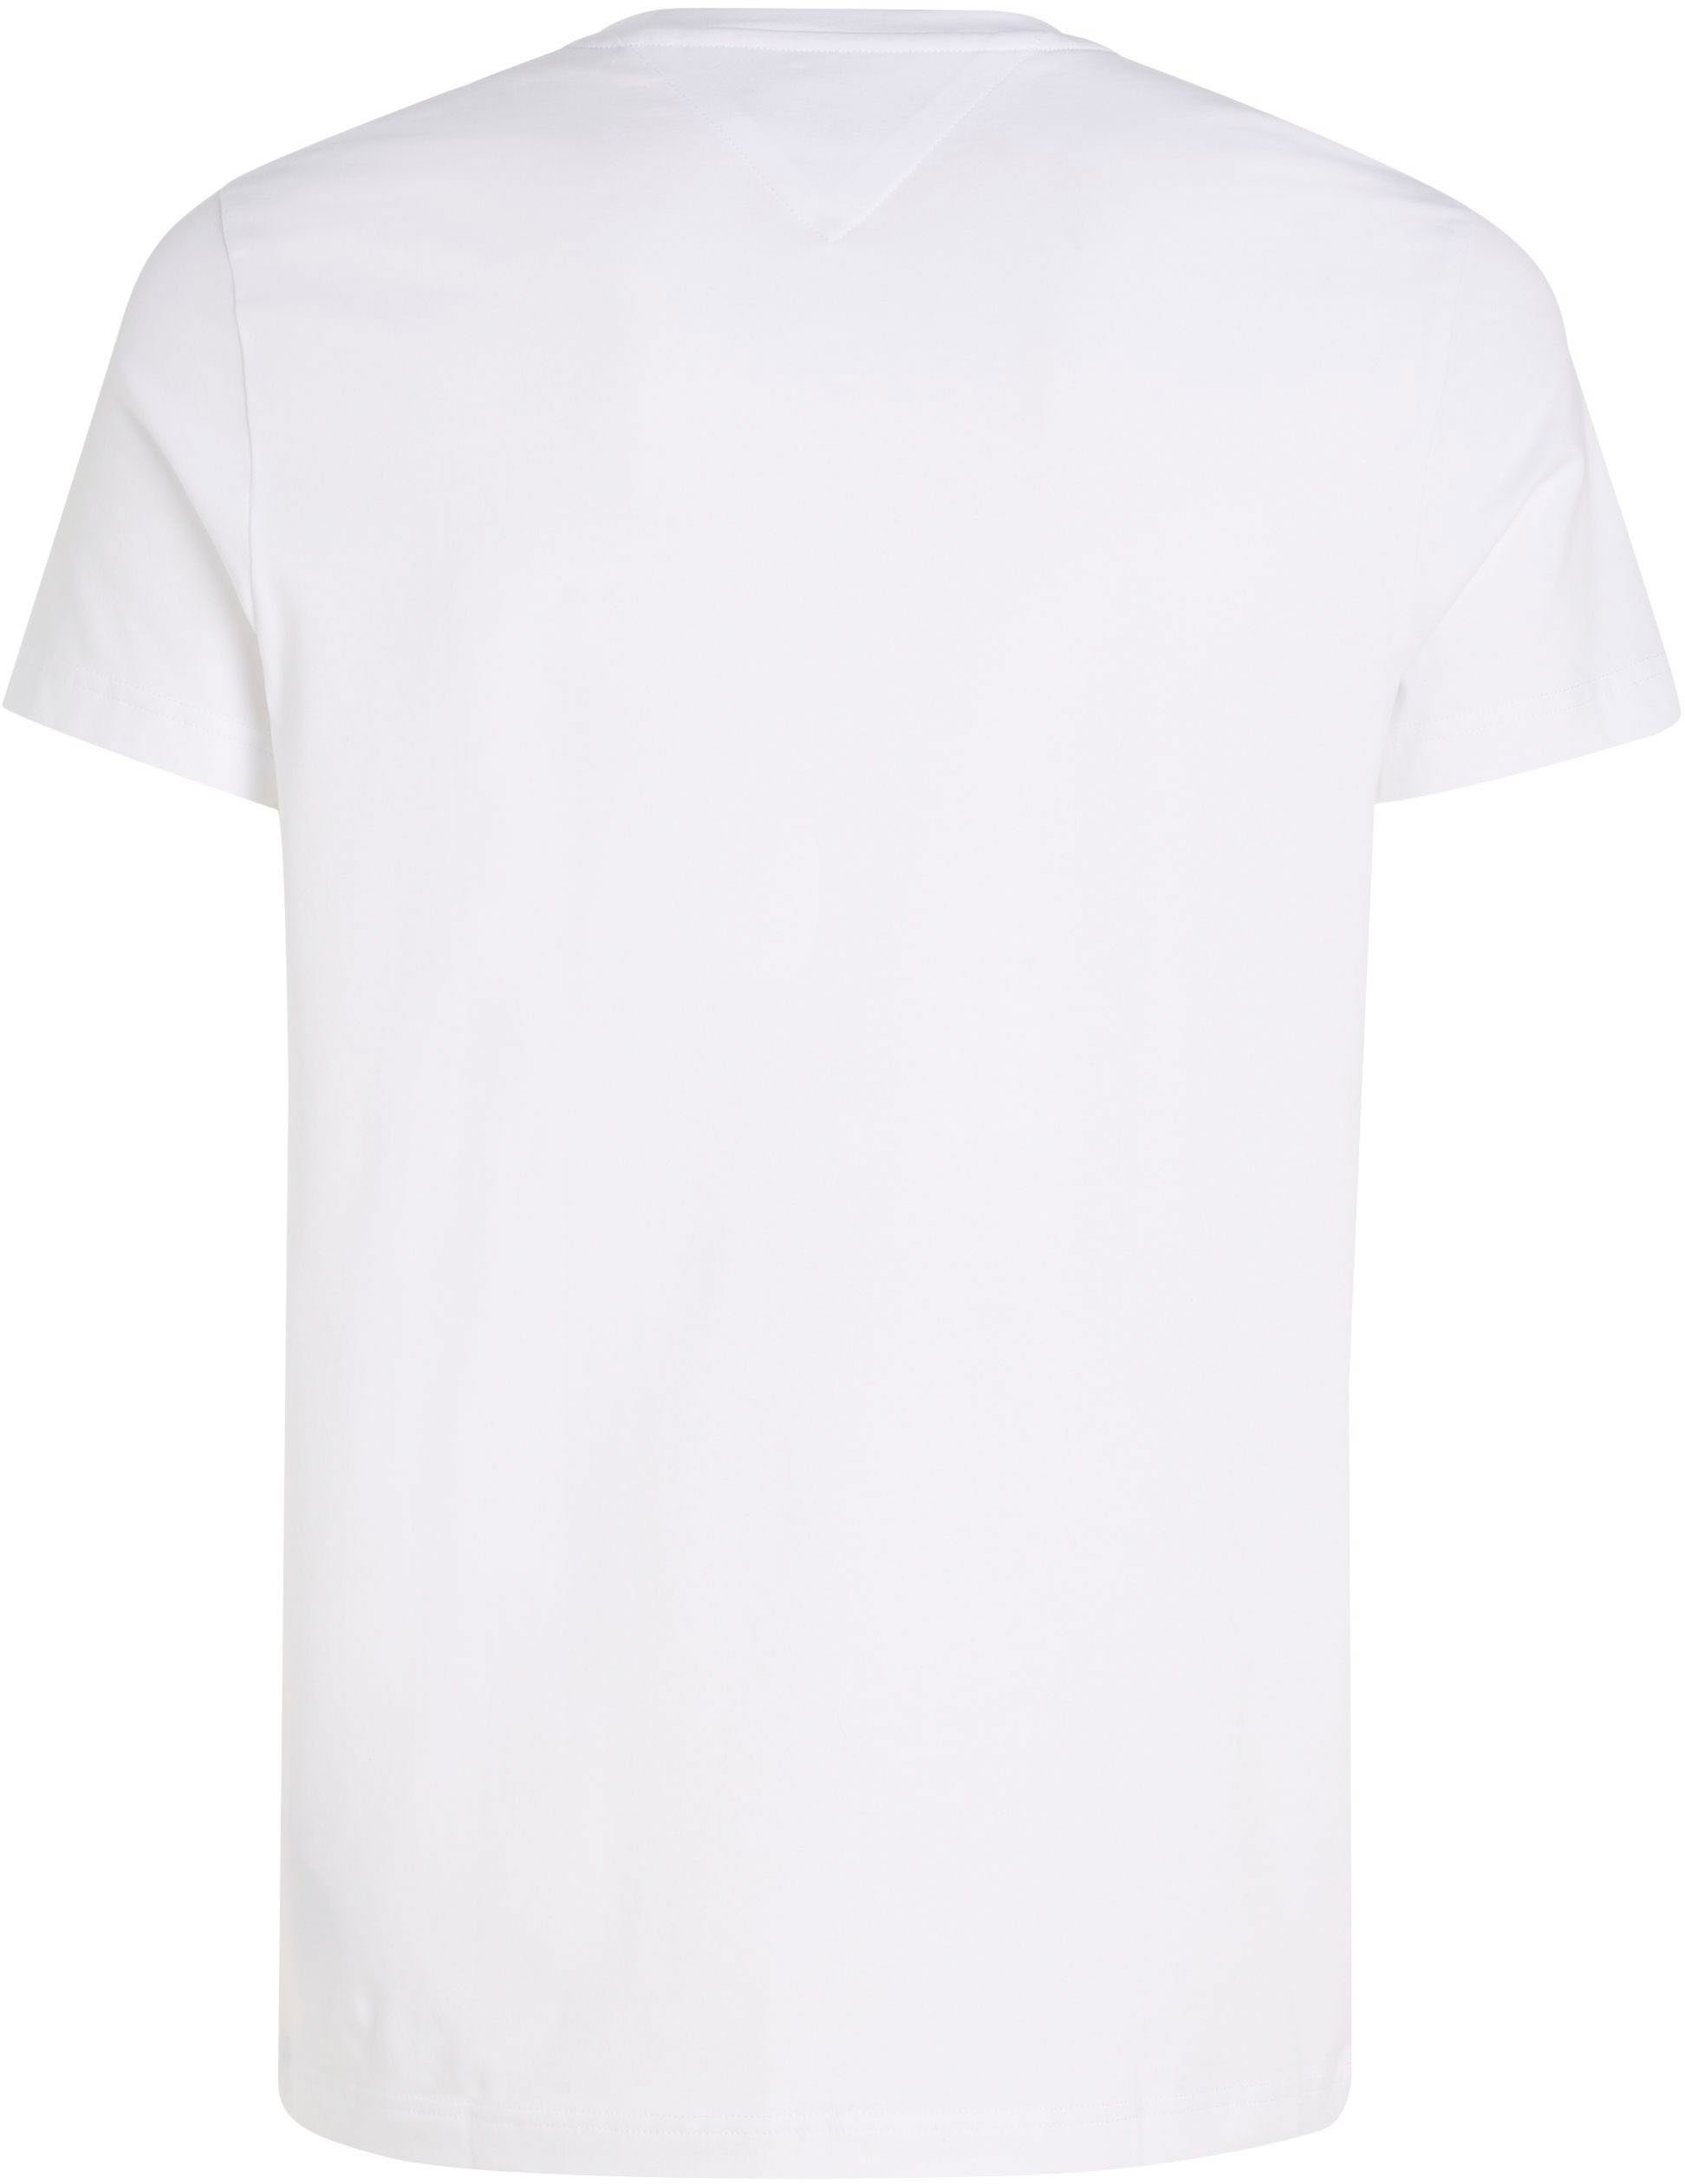 Hilfiger V-Shirt T-Shirt Stretch Tommy white Slim